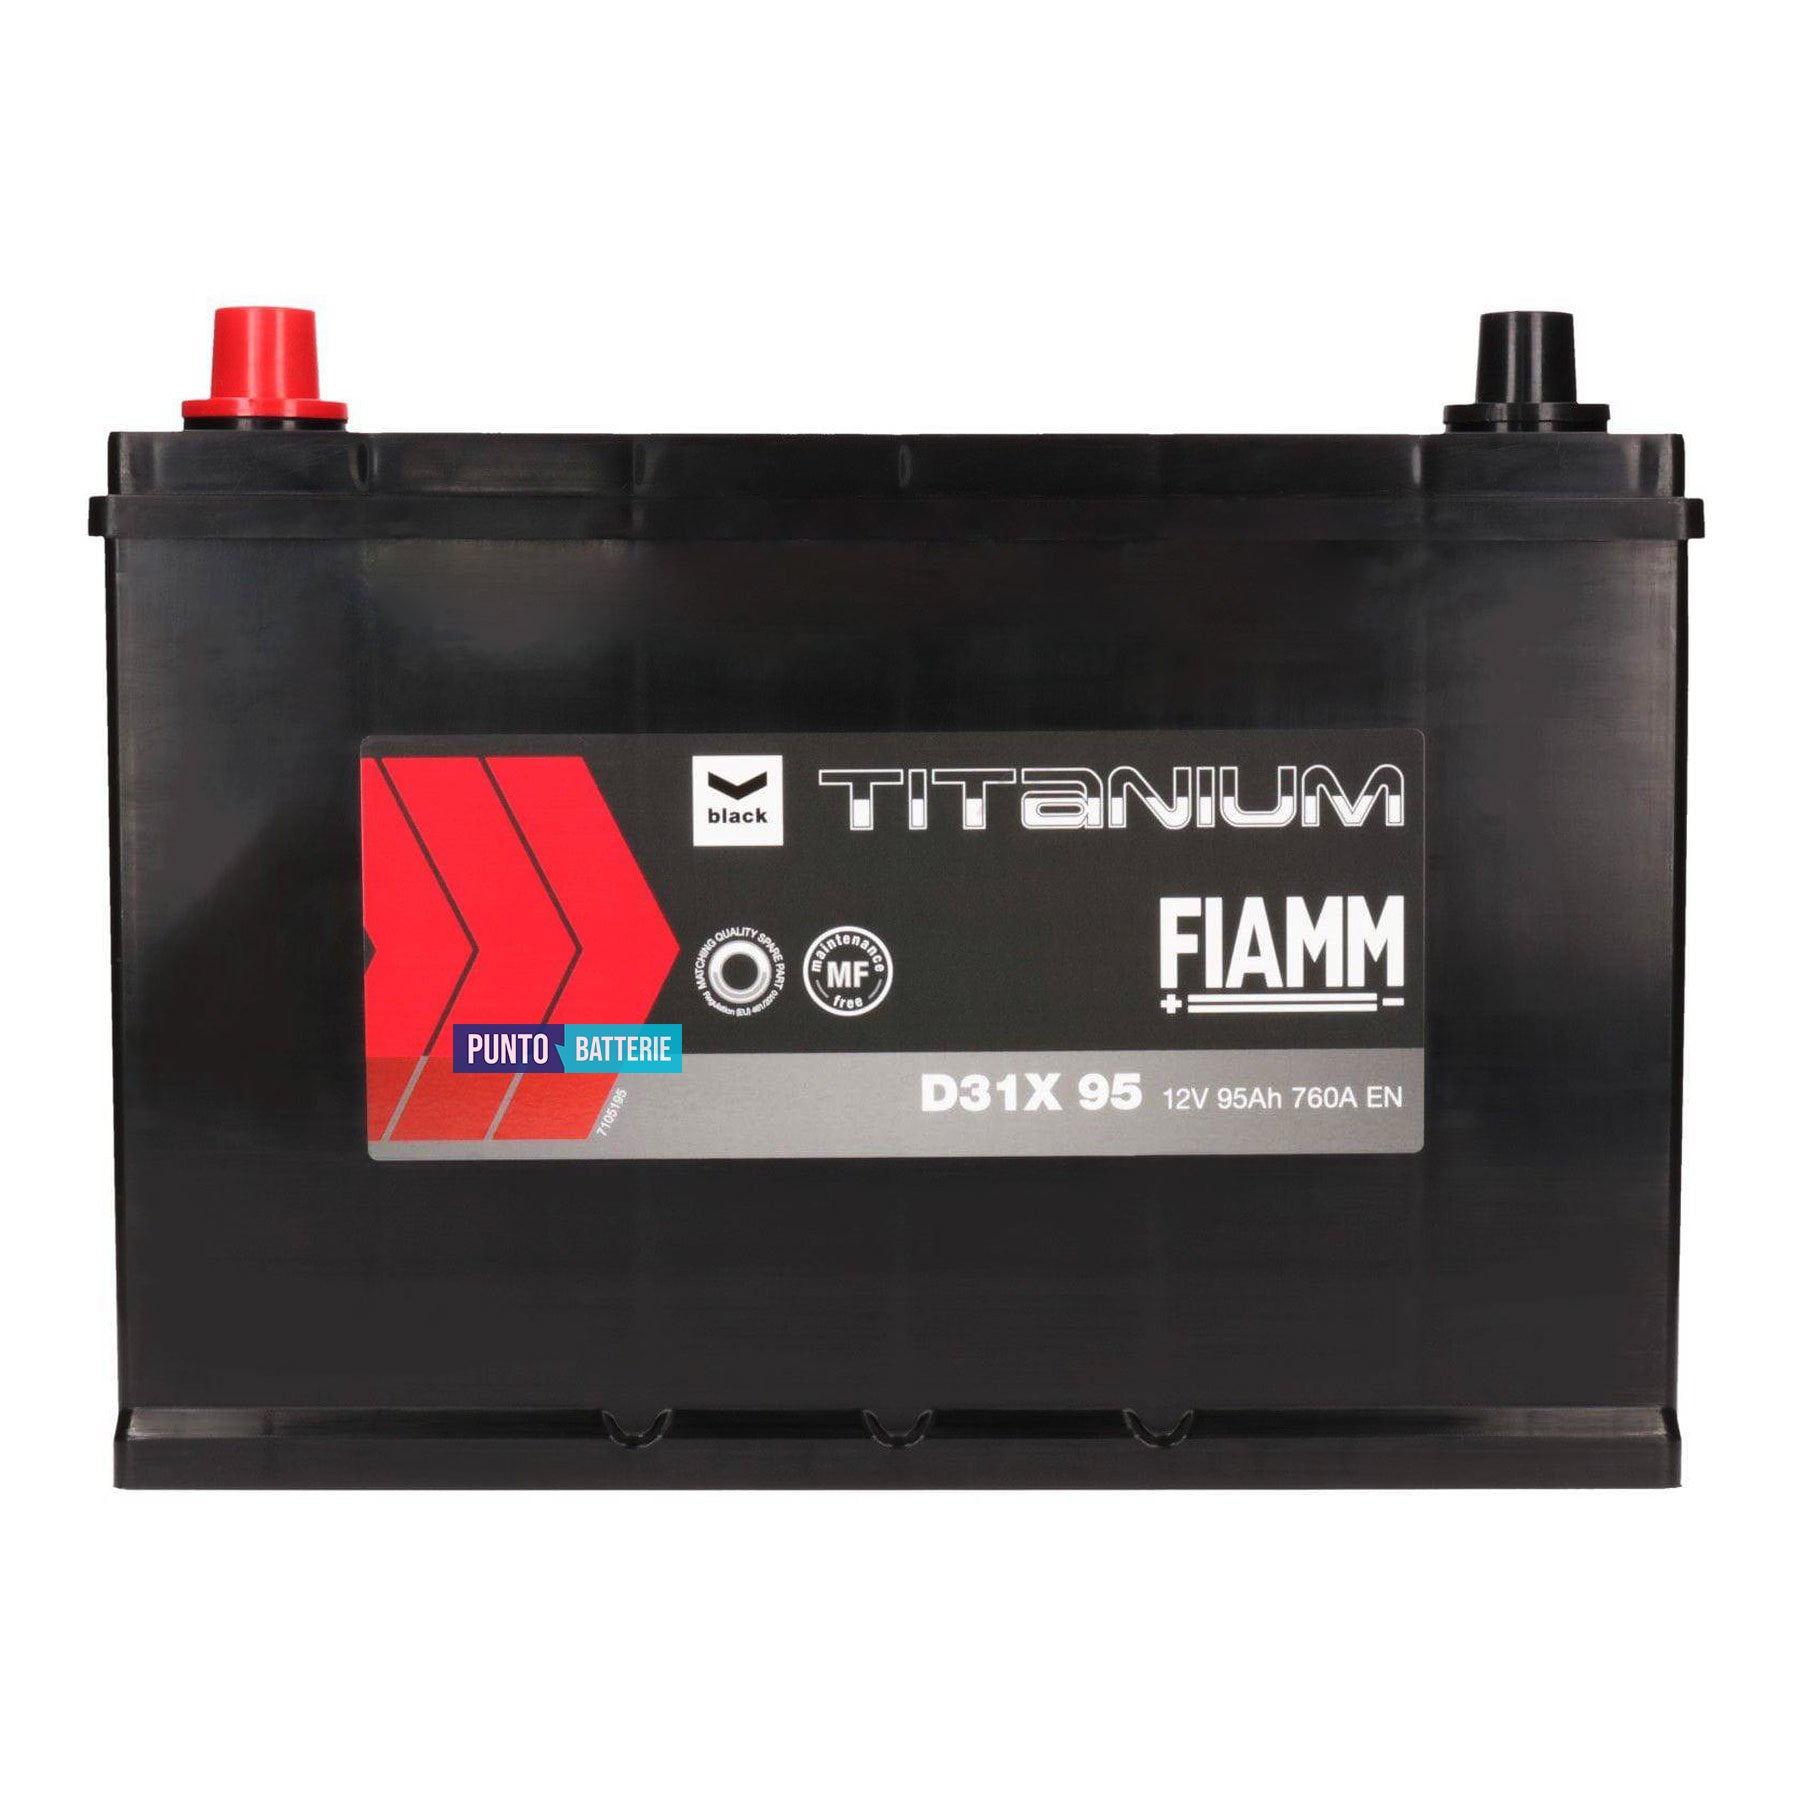 Batteria Fiamm 95Ah, 12V, 760A, 305x178x221mm